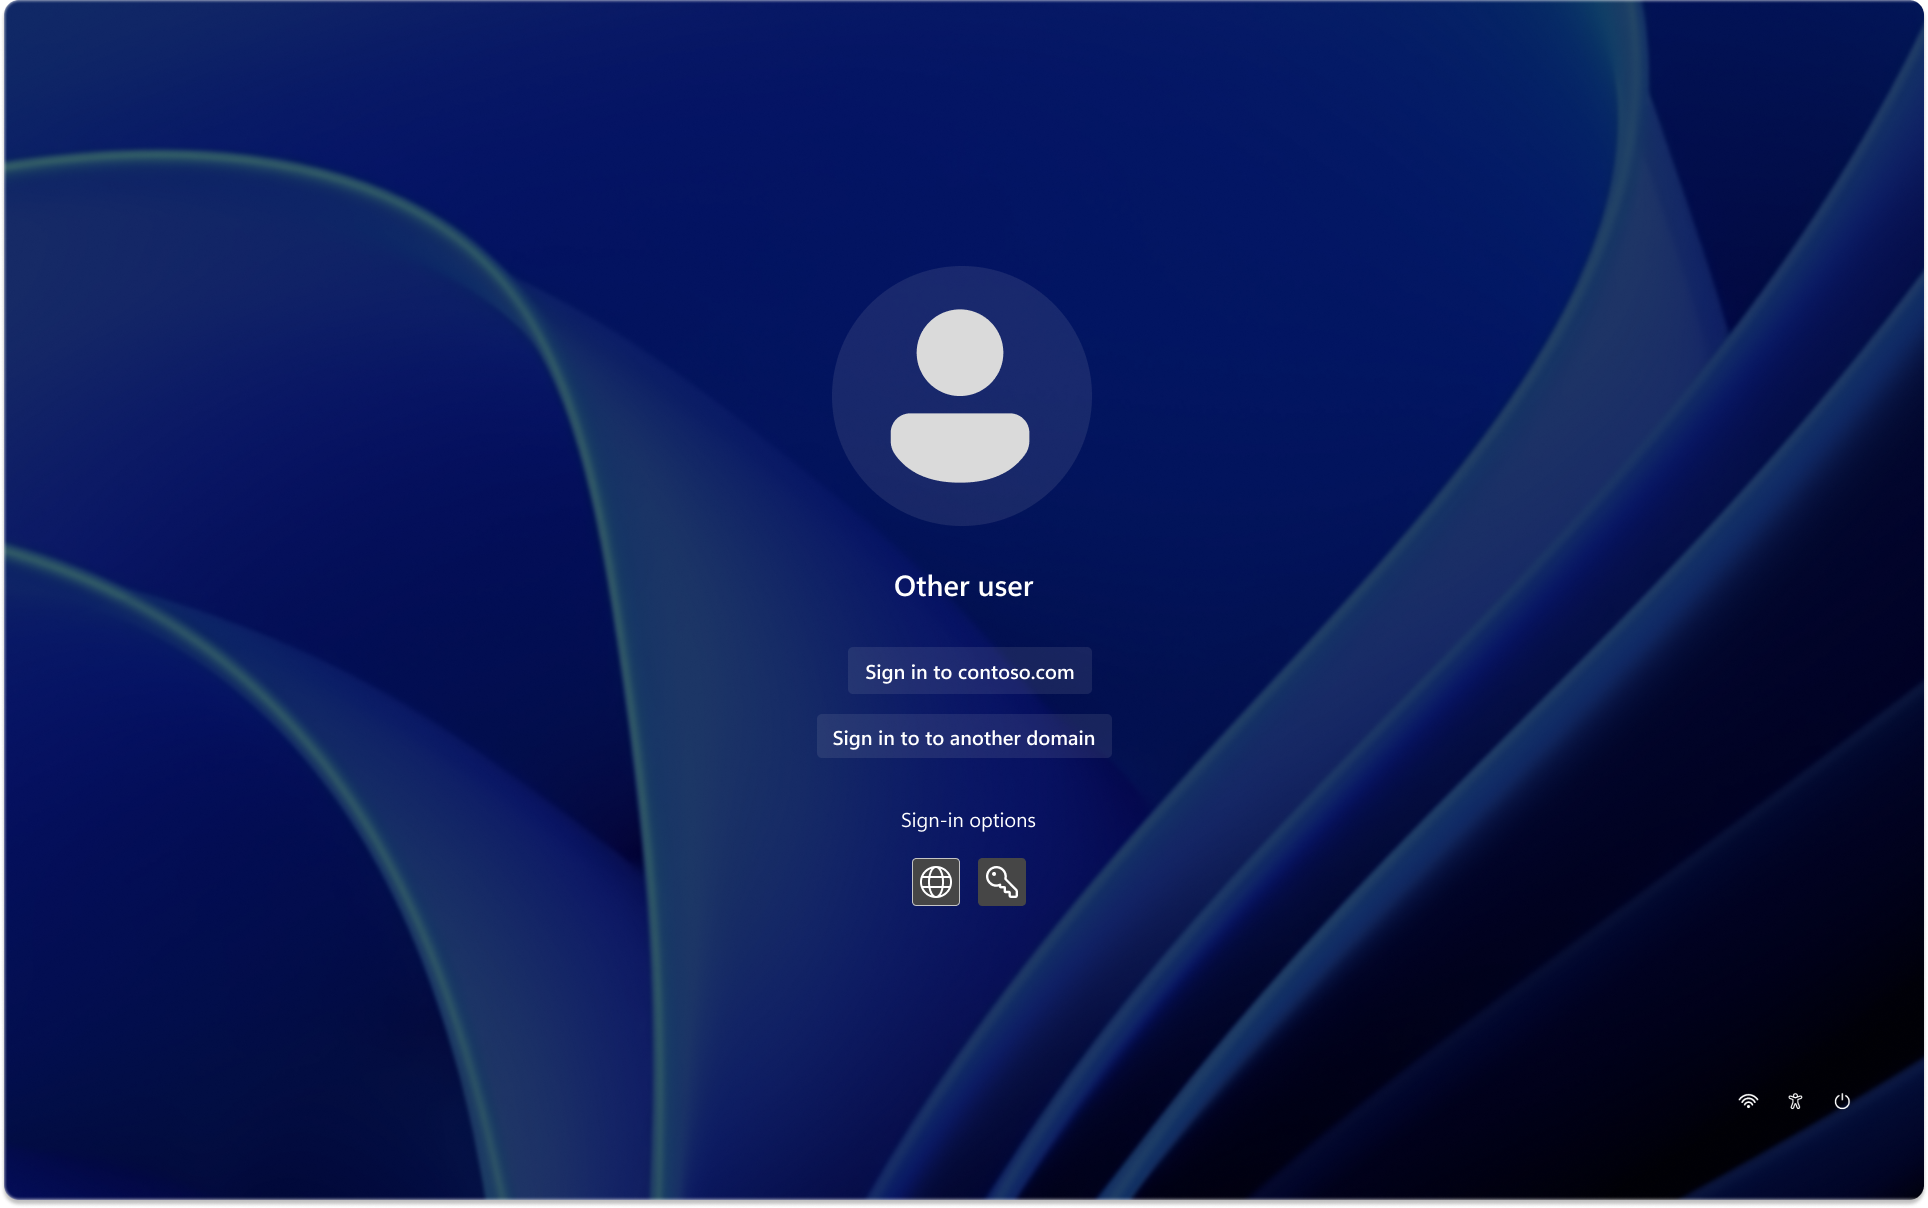 de identidades Captura de pantalla de la pantalla de bloqueo de Windows con el inquilino preferido configurado.